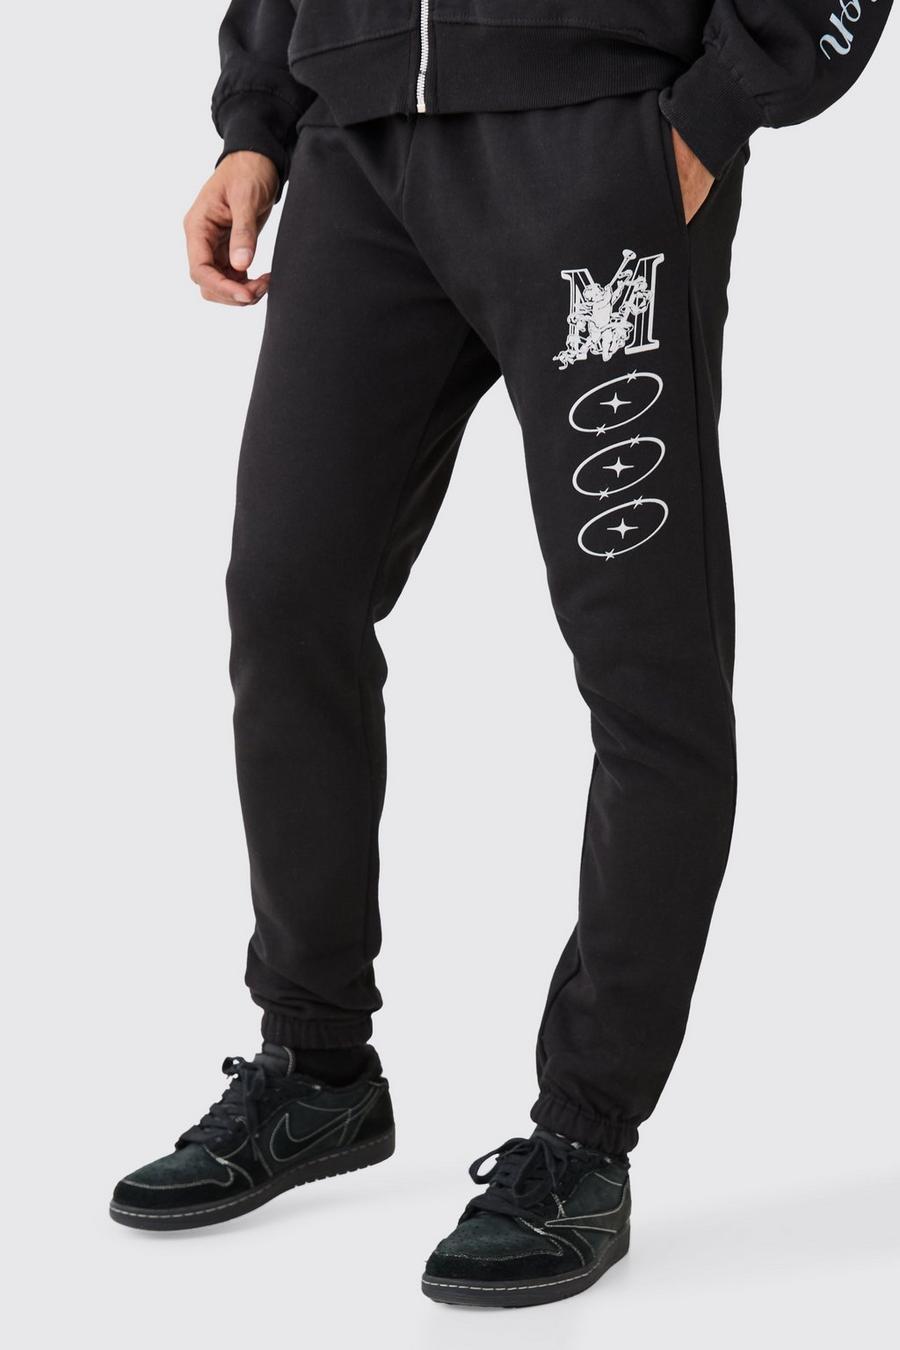 Pantalón deportivo ajustado grueso con estampado variado, Black